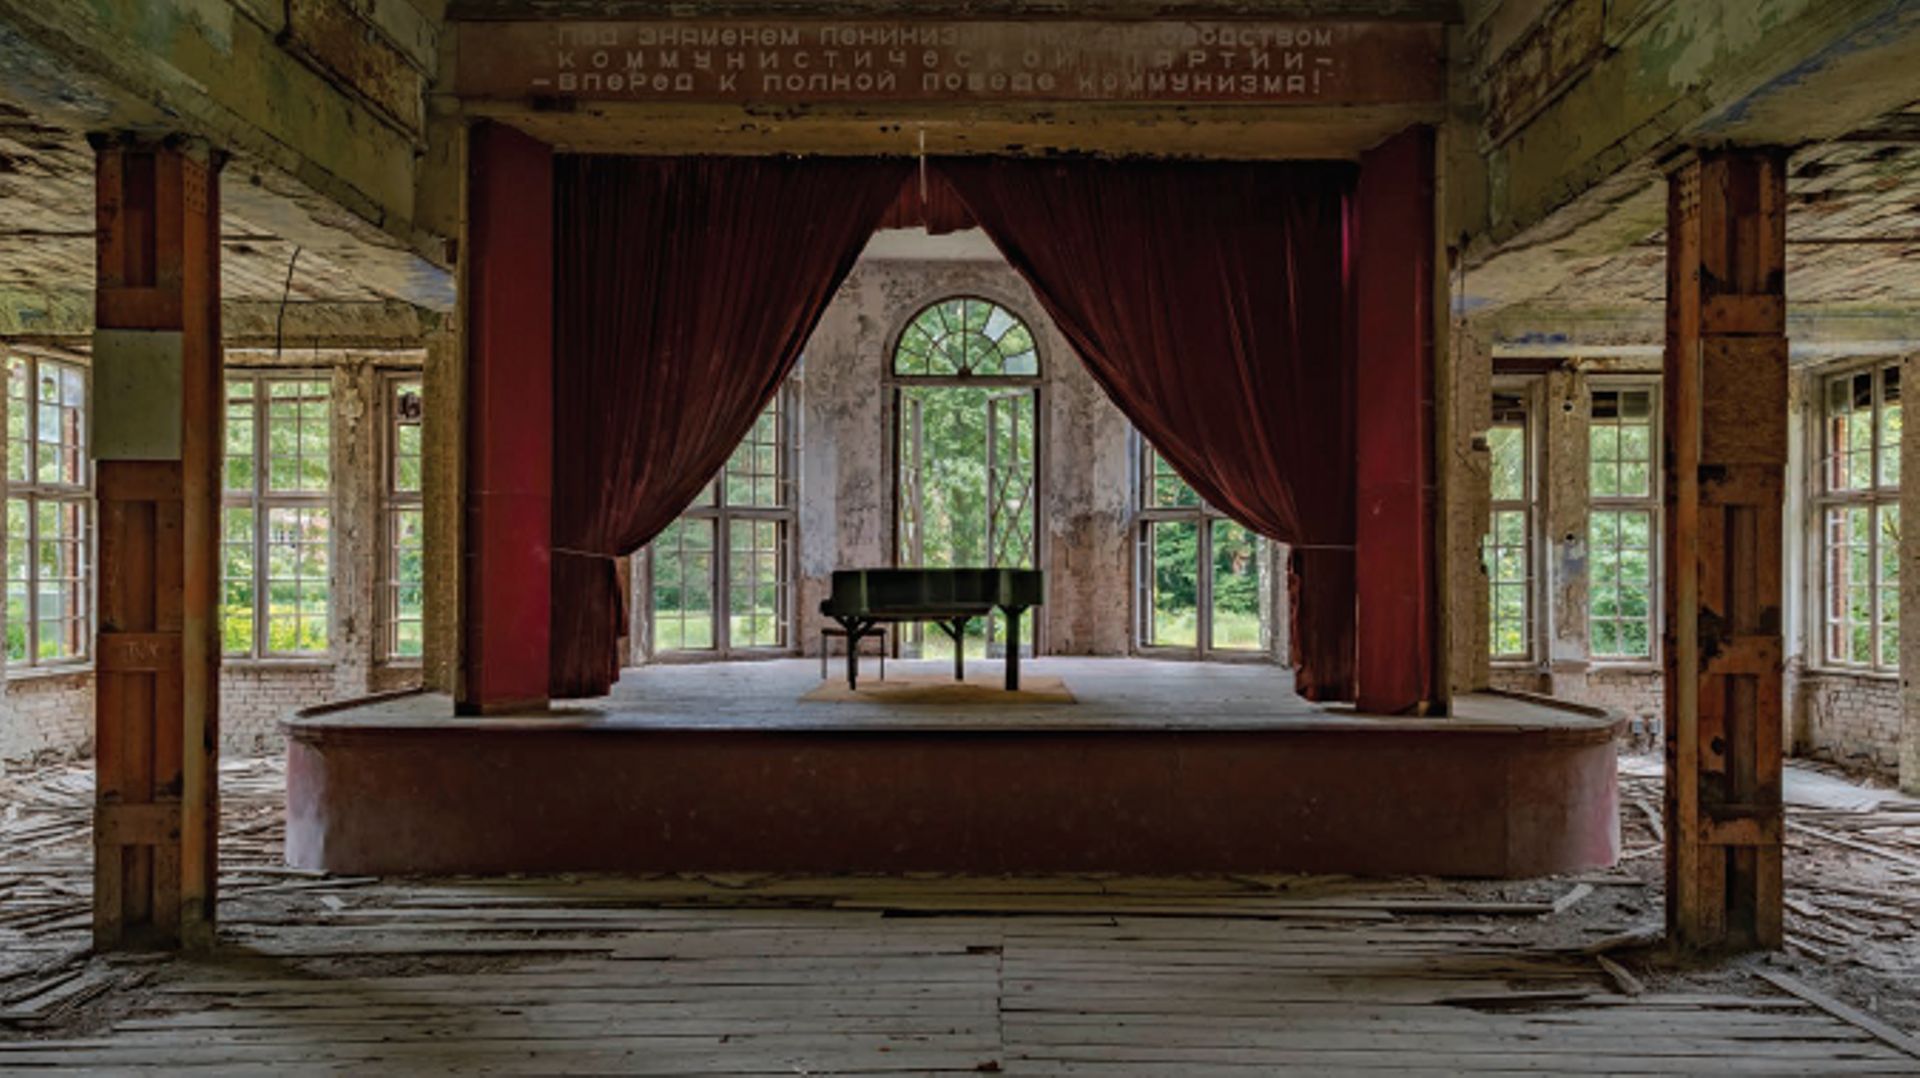 Une salle de concert abandonnée par l'Armée rouge